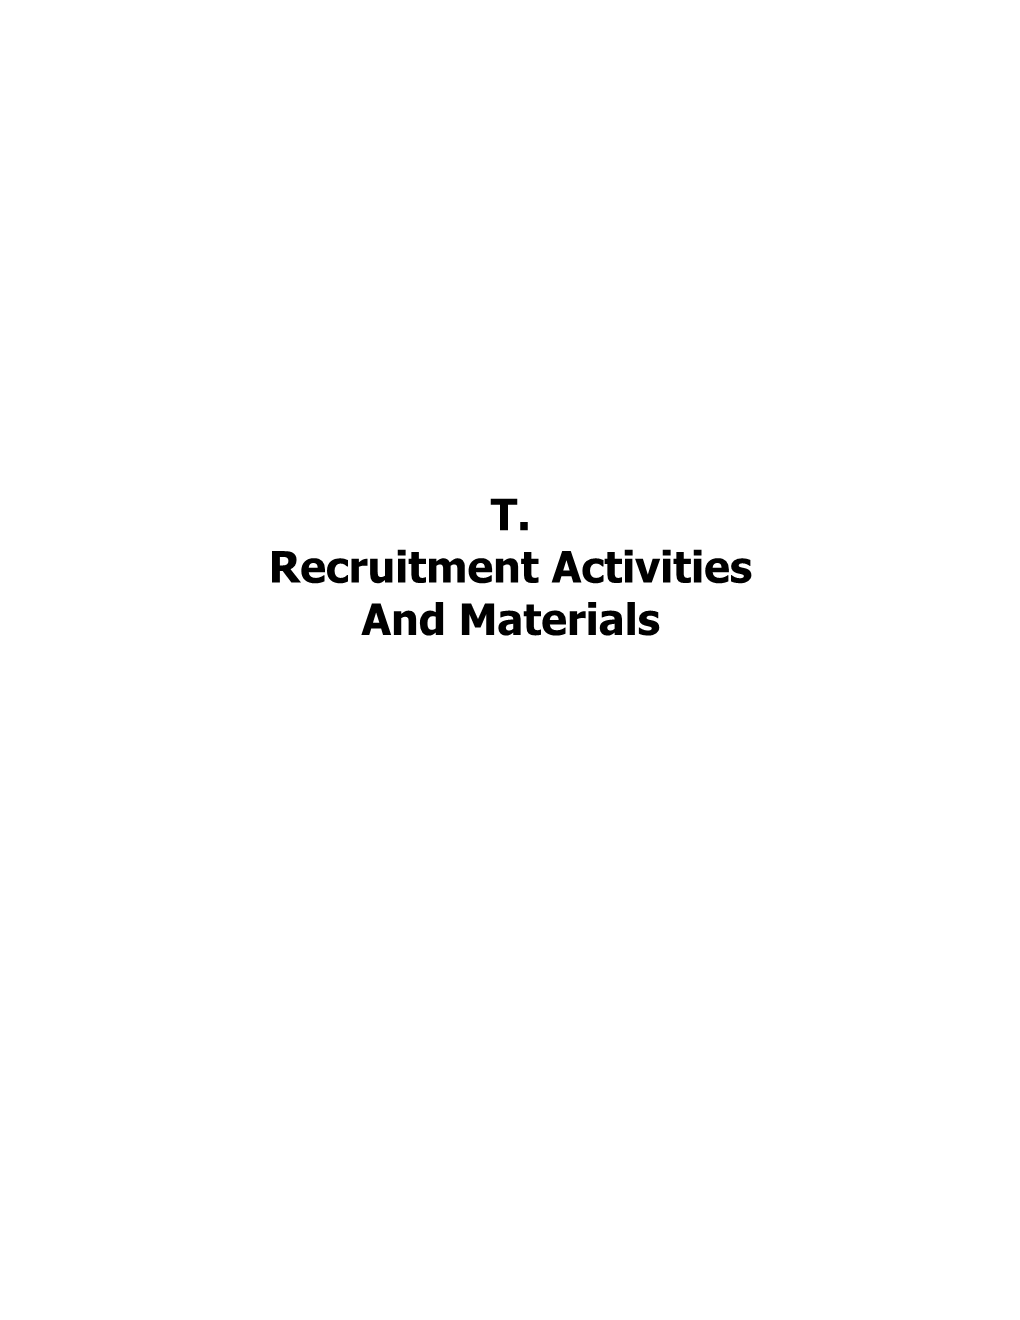 Recruitment Activities